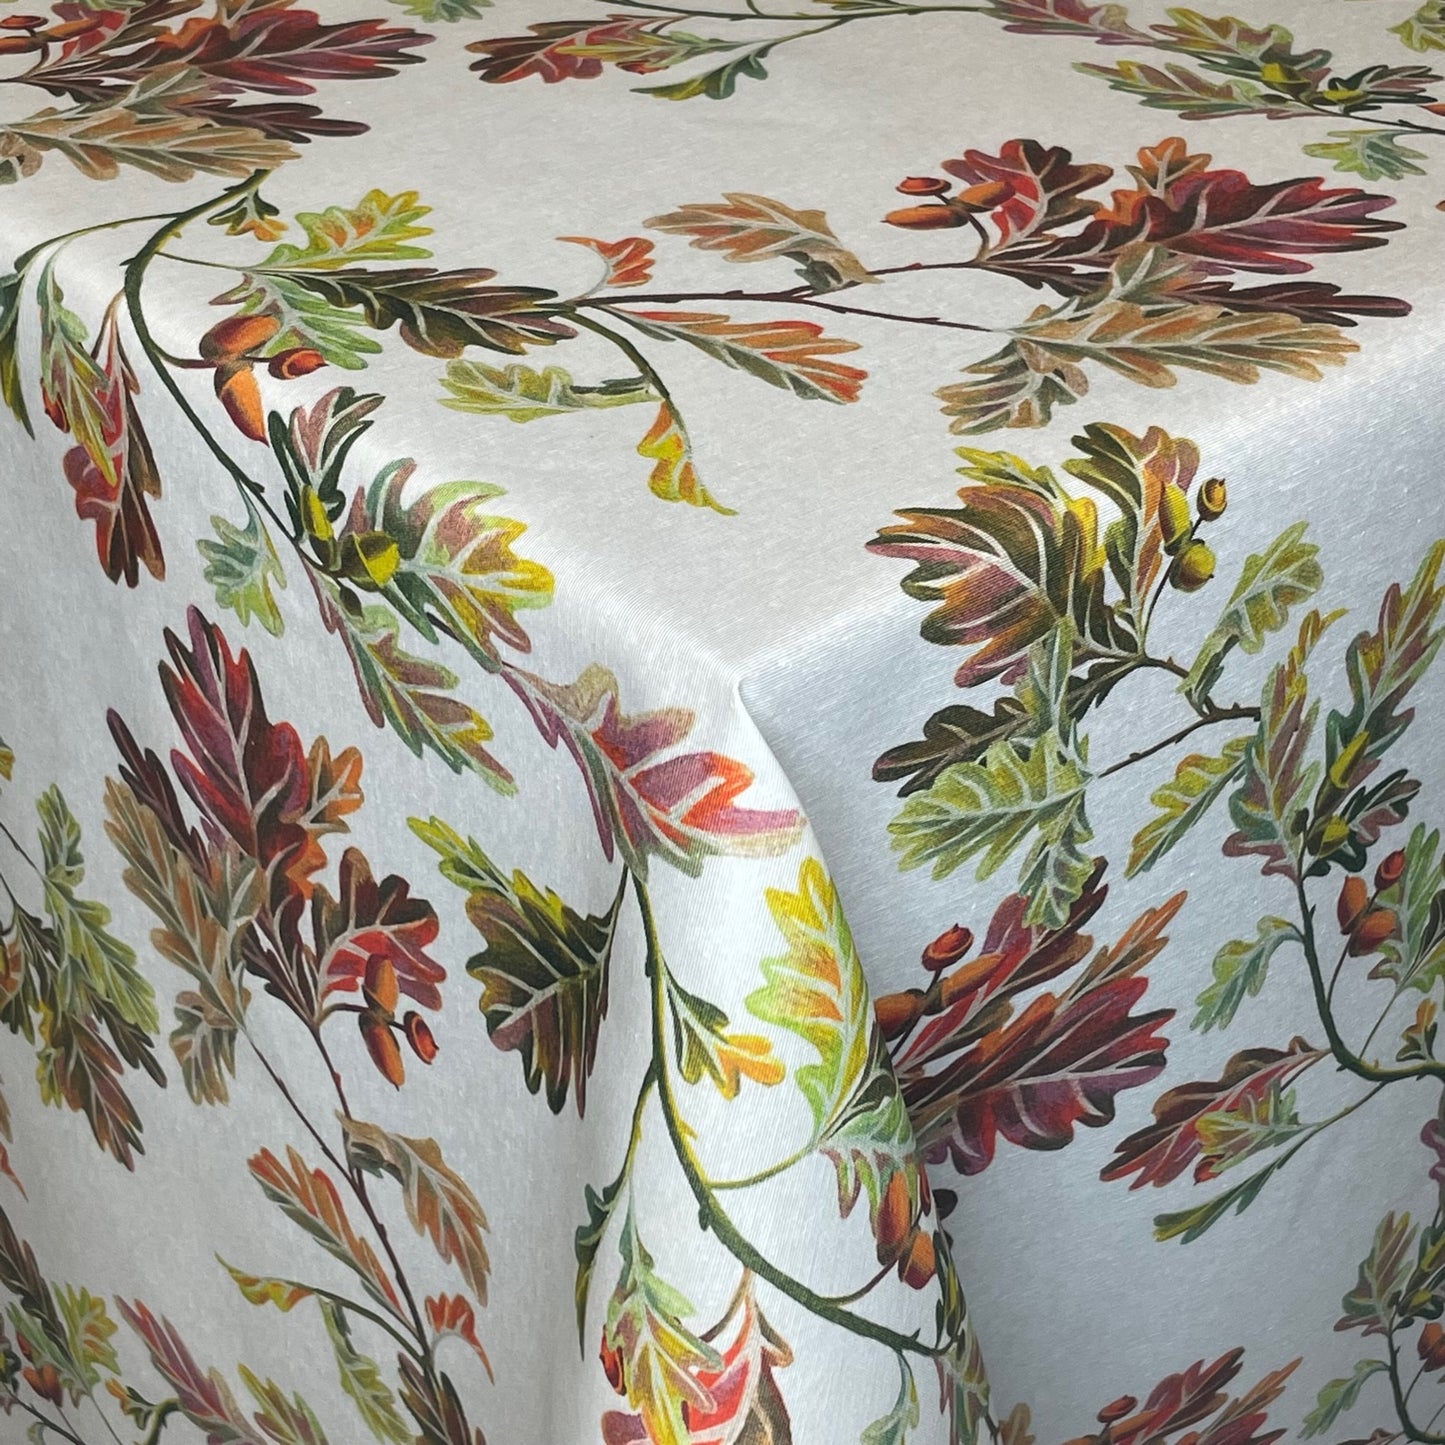 textile Tischdecke Lauber Blätter Herbst kevkus eckig rund oval kaufen